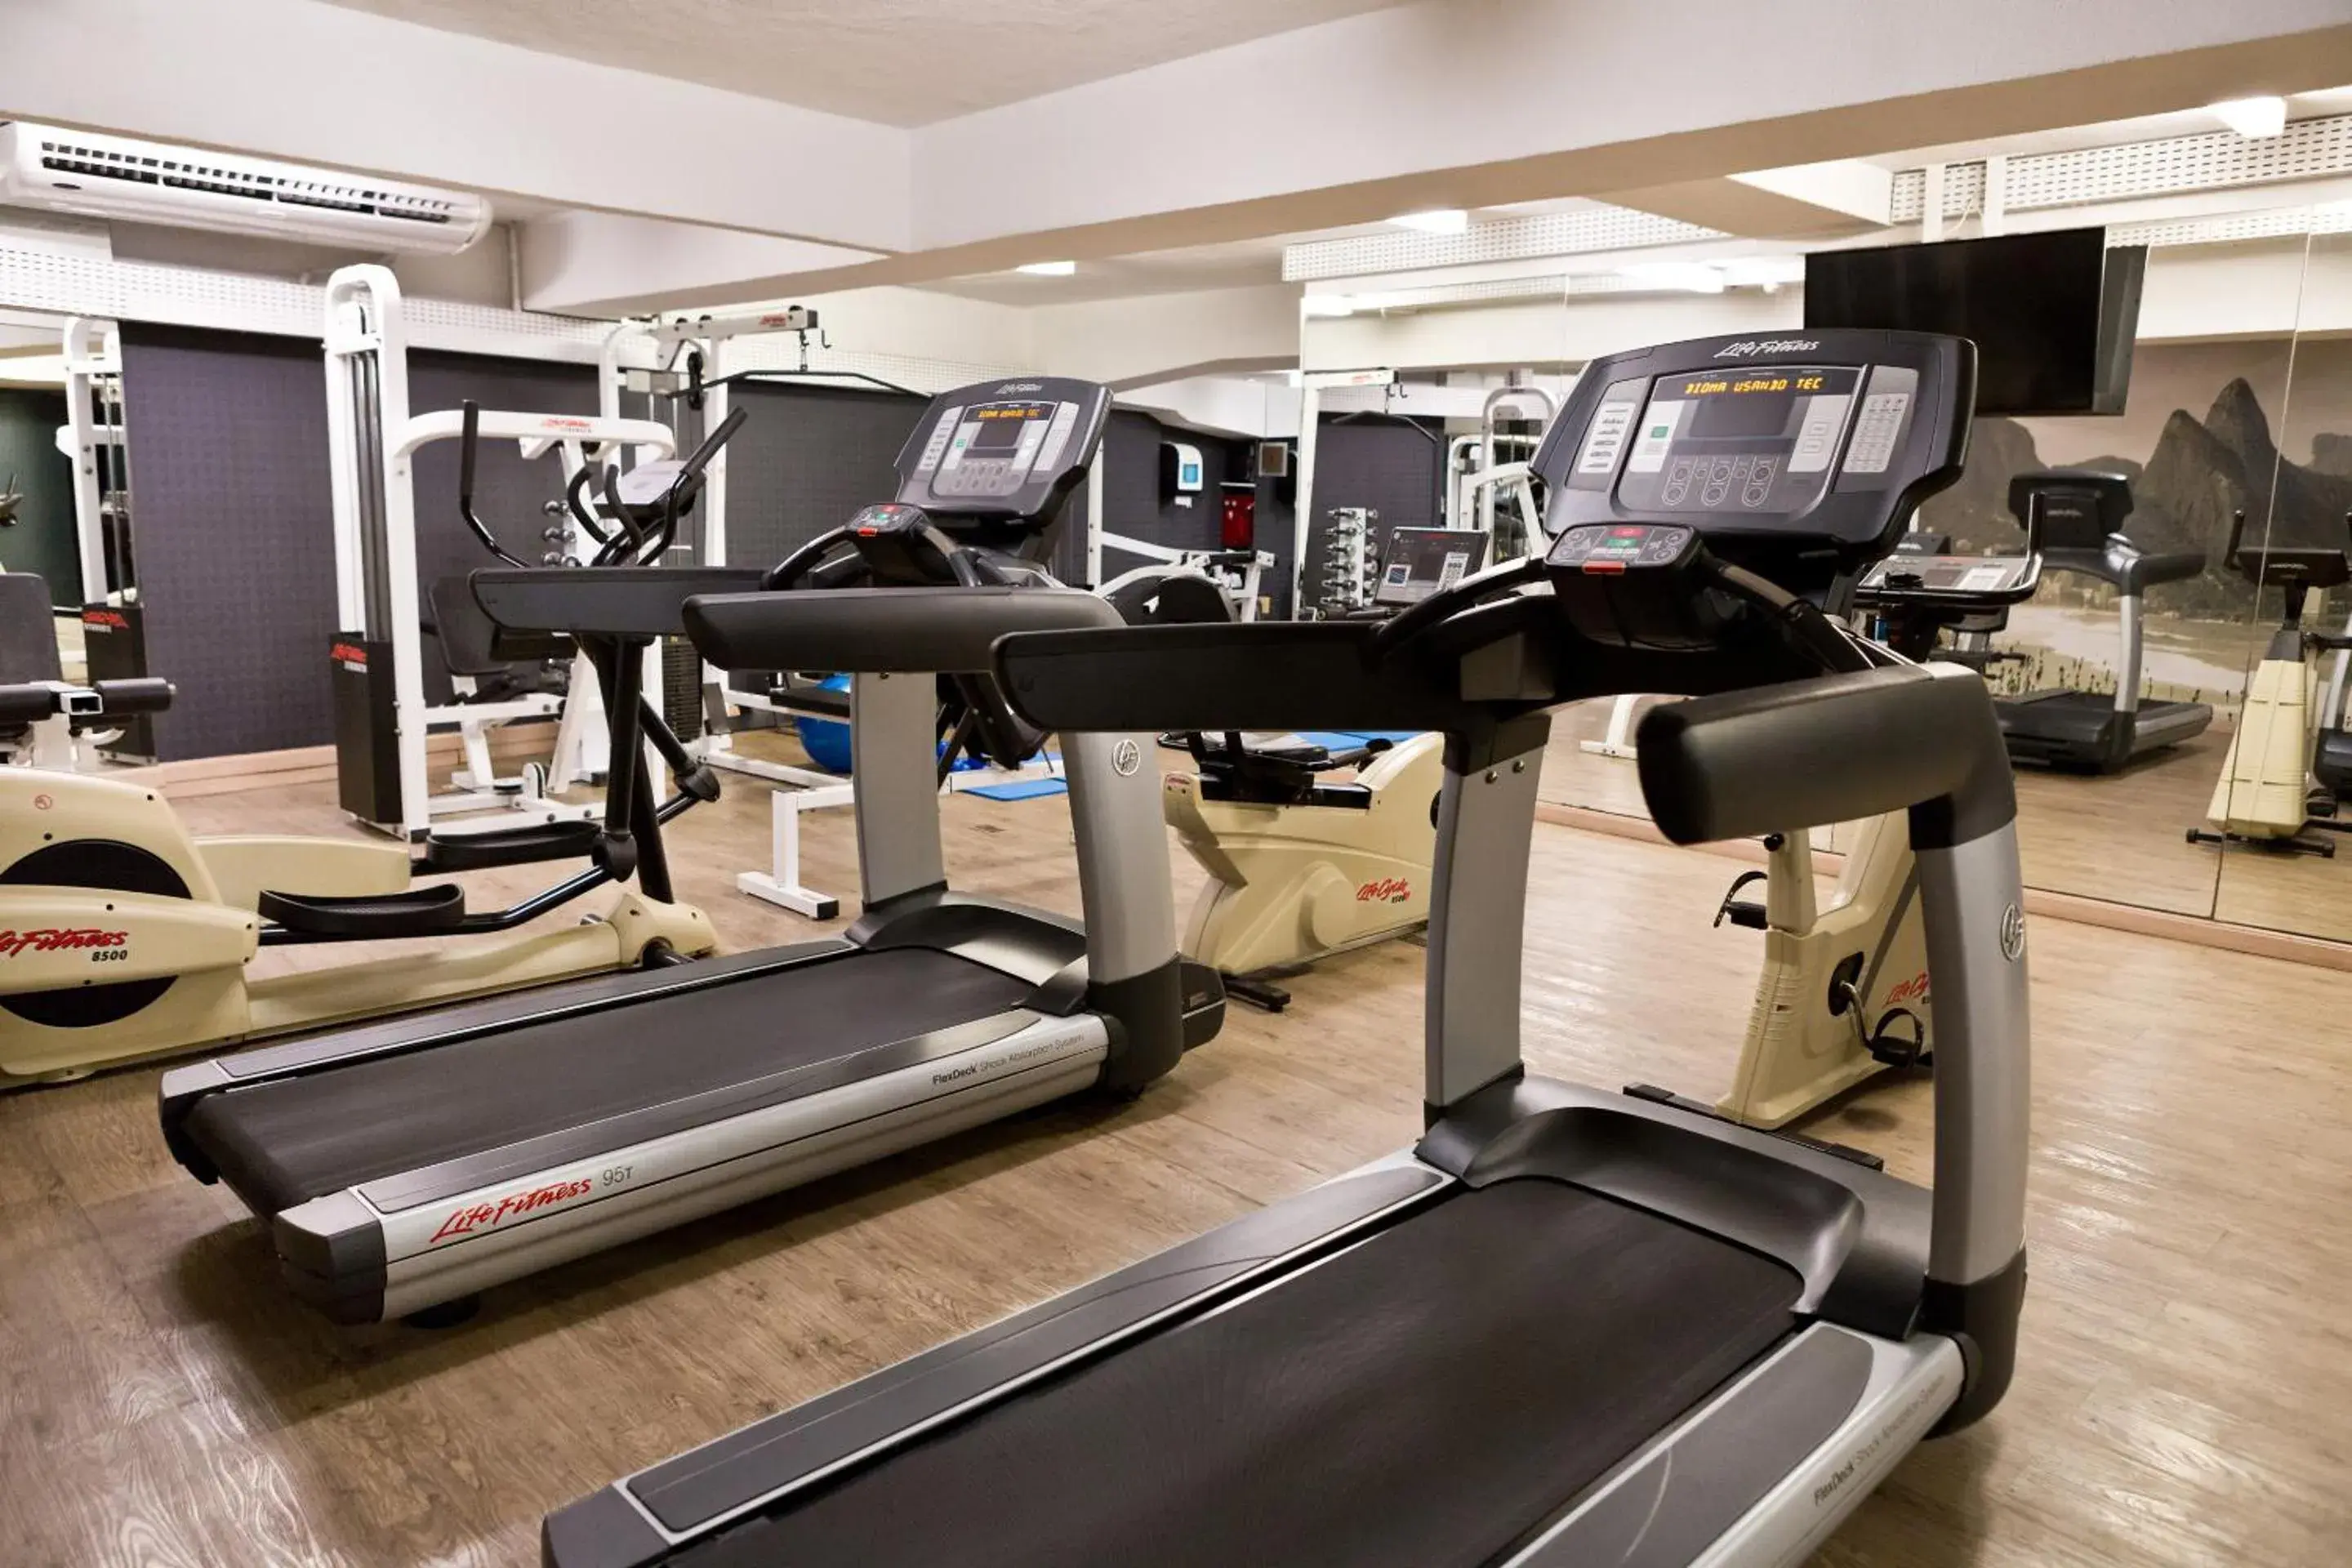 Fitness centre/facilities, Fitness Center/Facilities in Ritz Leblon